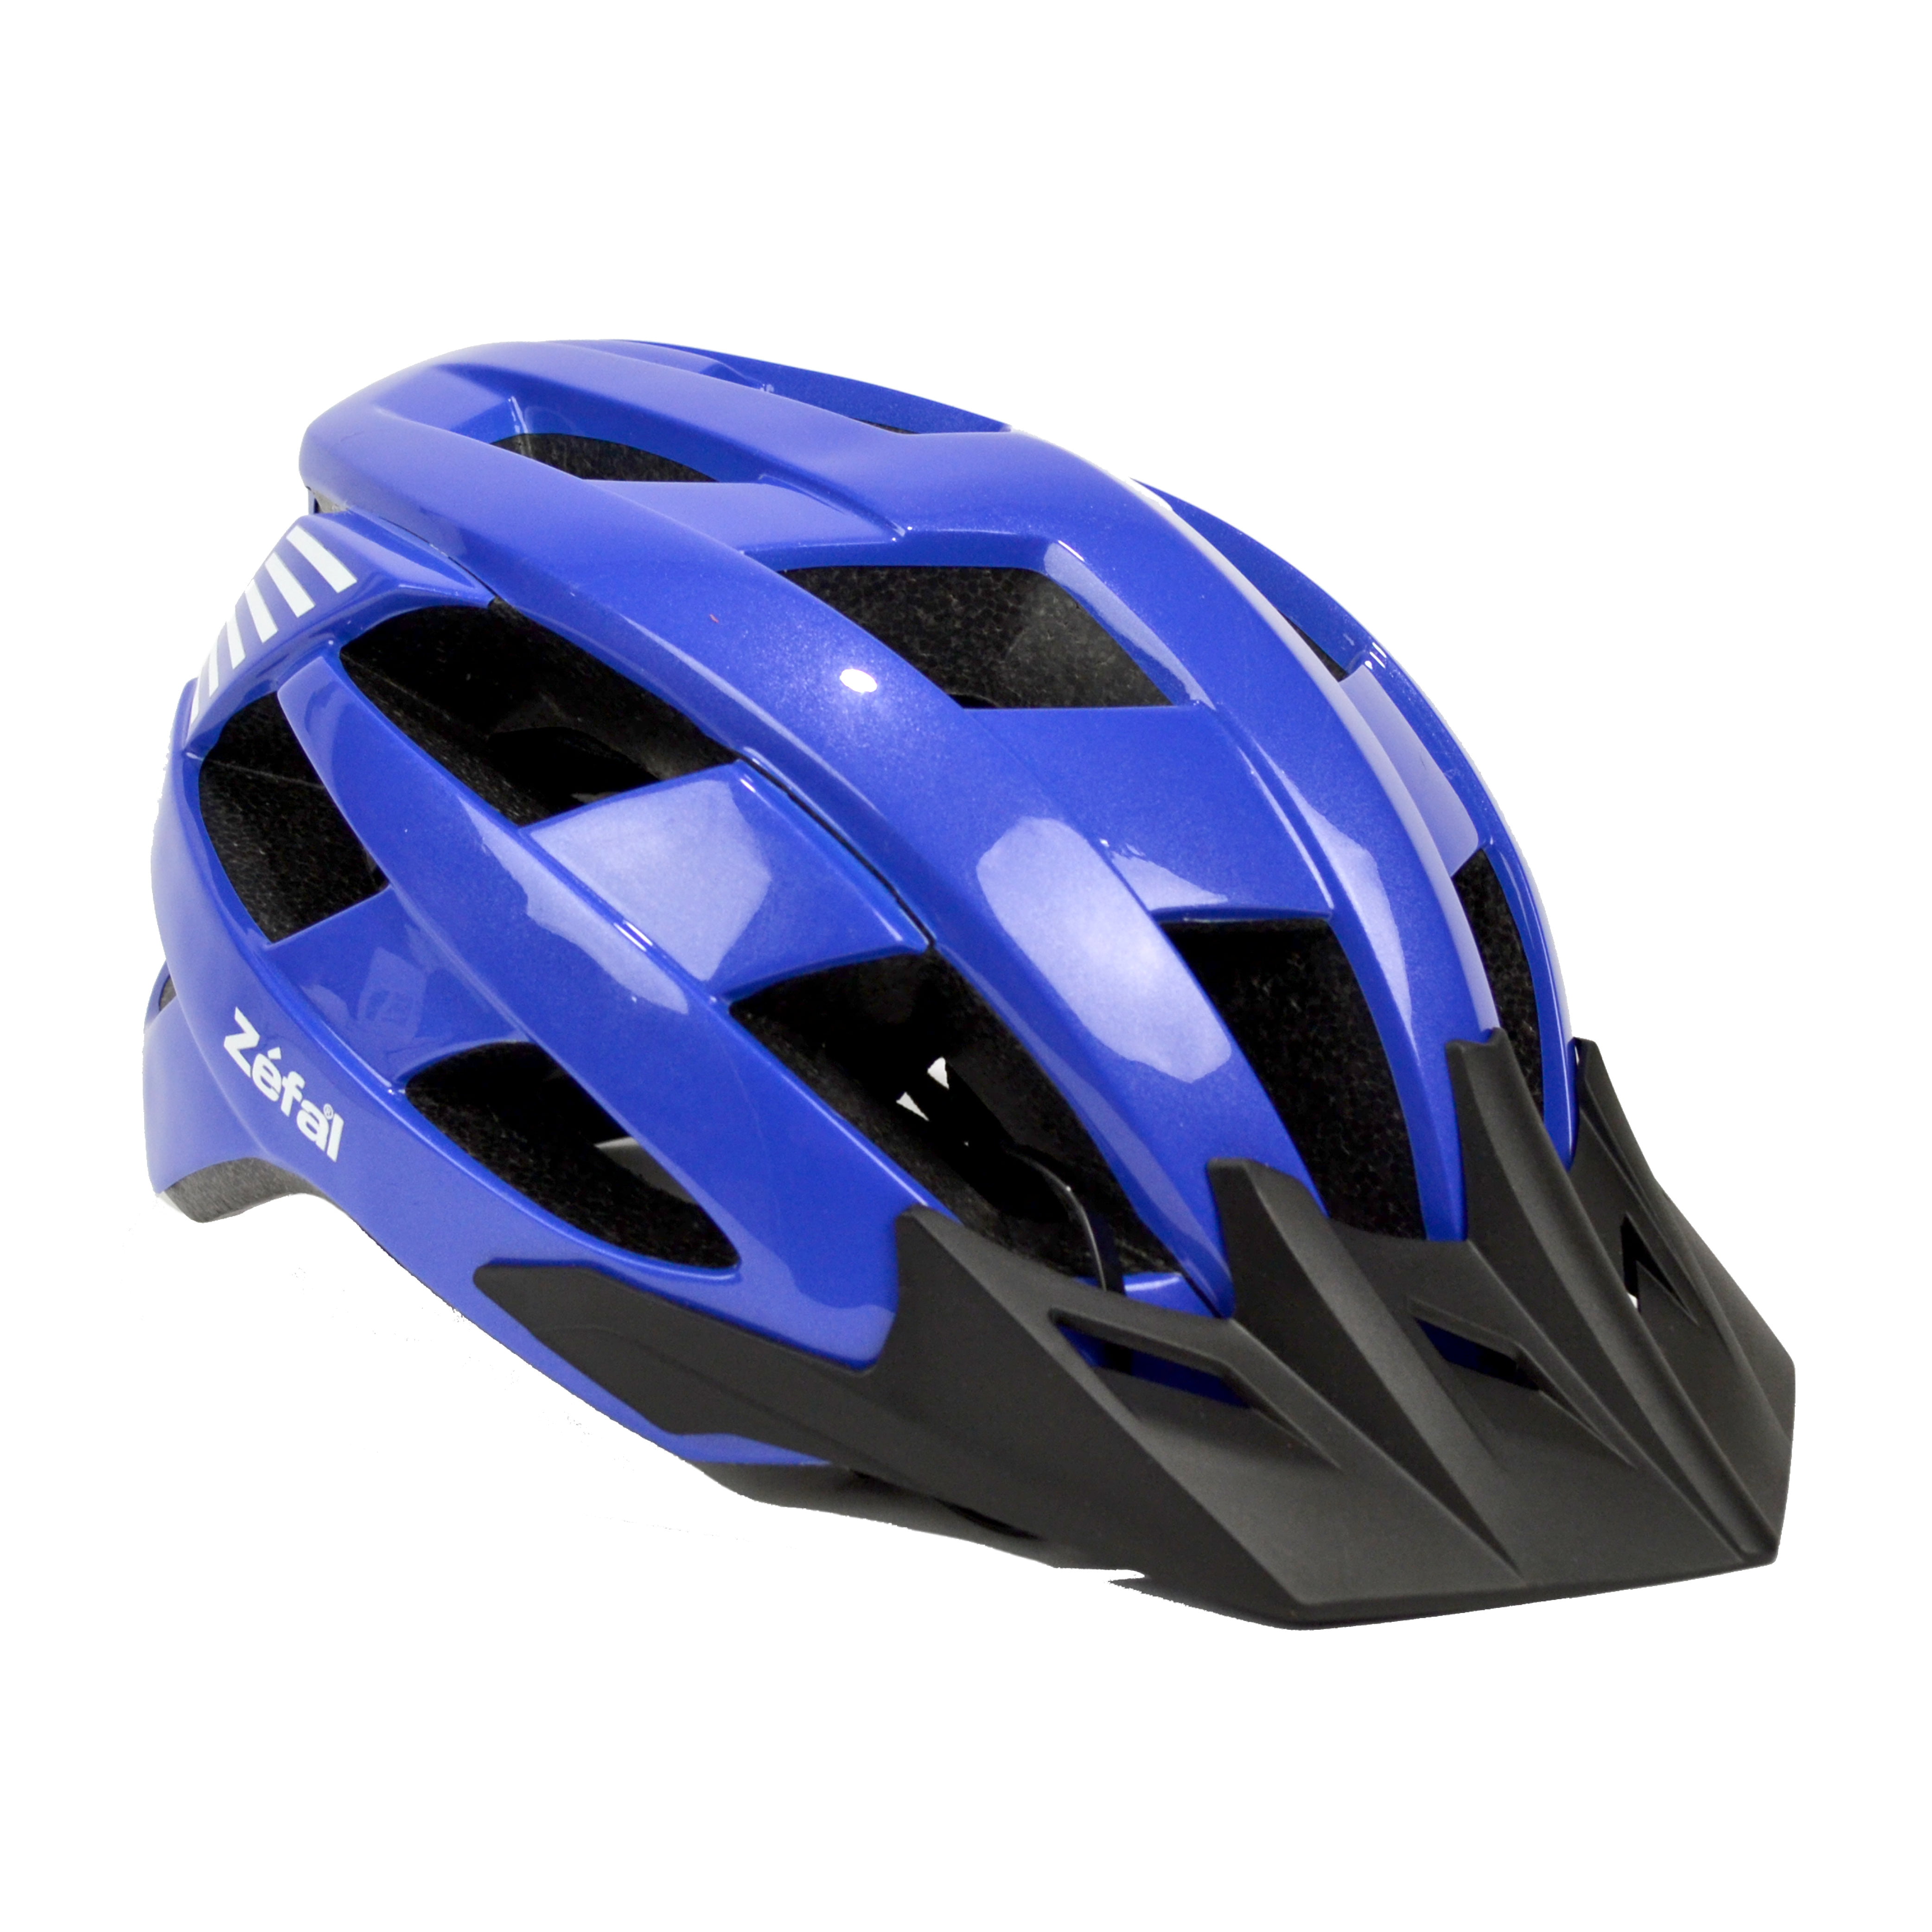 Unisex Adjust Bicycle Cycling MTB Bike Skate Helmet Mountain Bike Helmet 